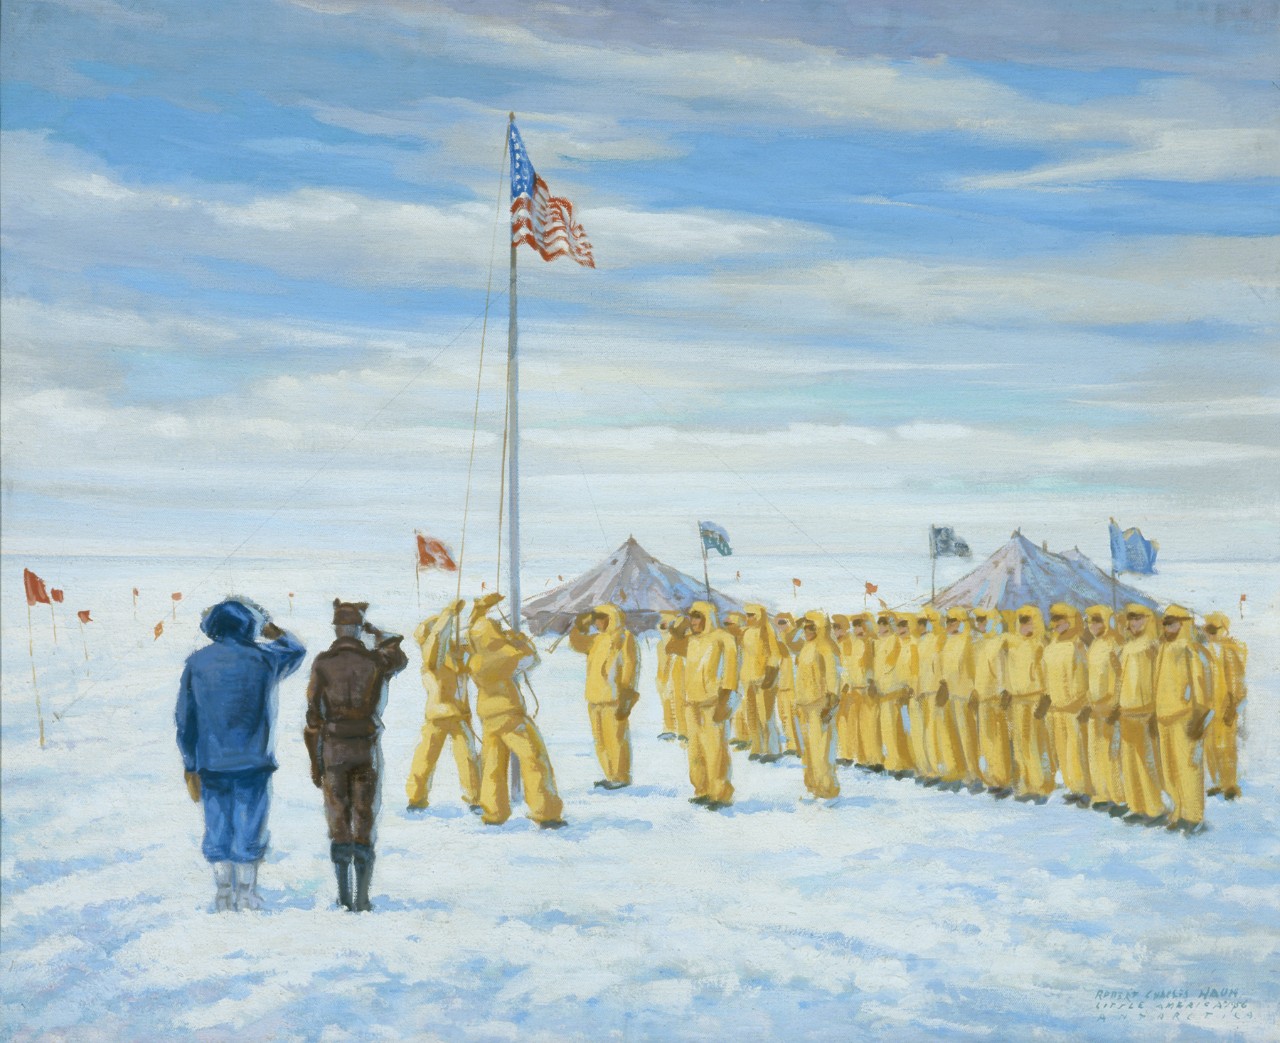 Ceremony around the flag pole